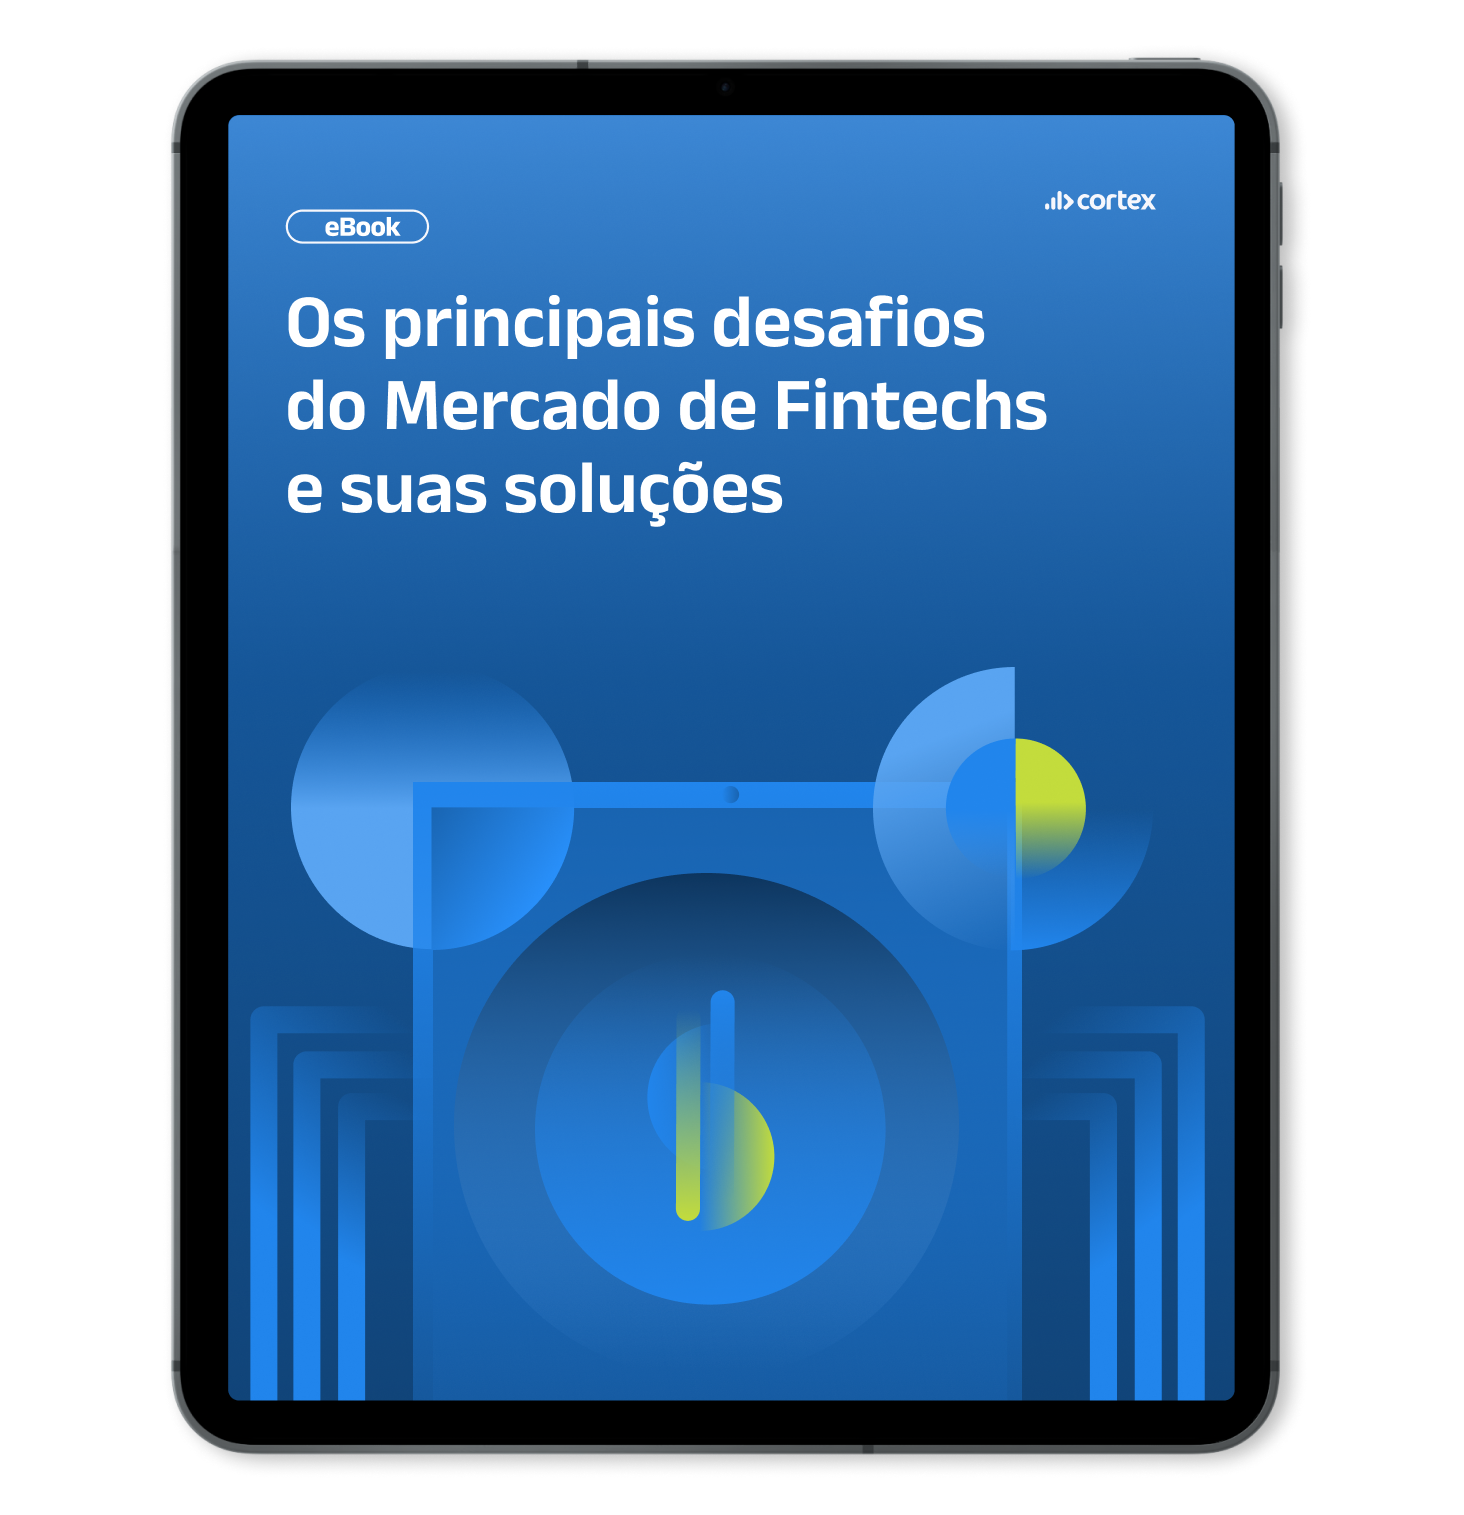 Mockup de Tablet com capa do [ebook] Os principais desafios do Mercado de Fintechs e suas soluções